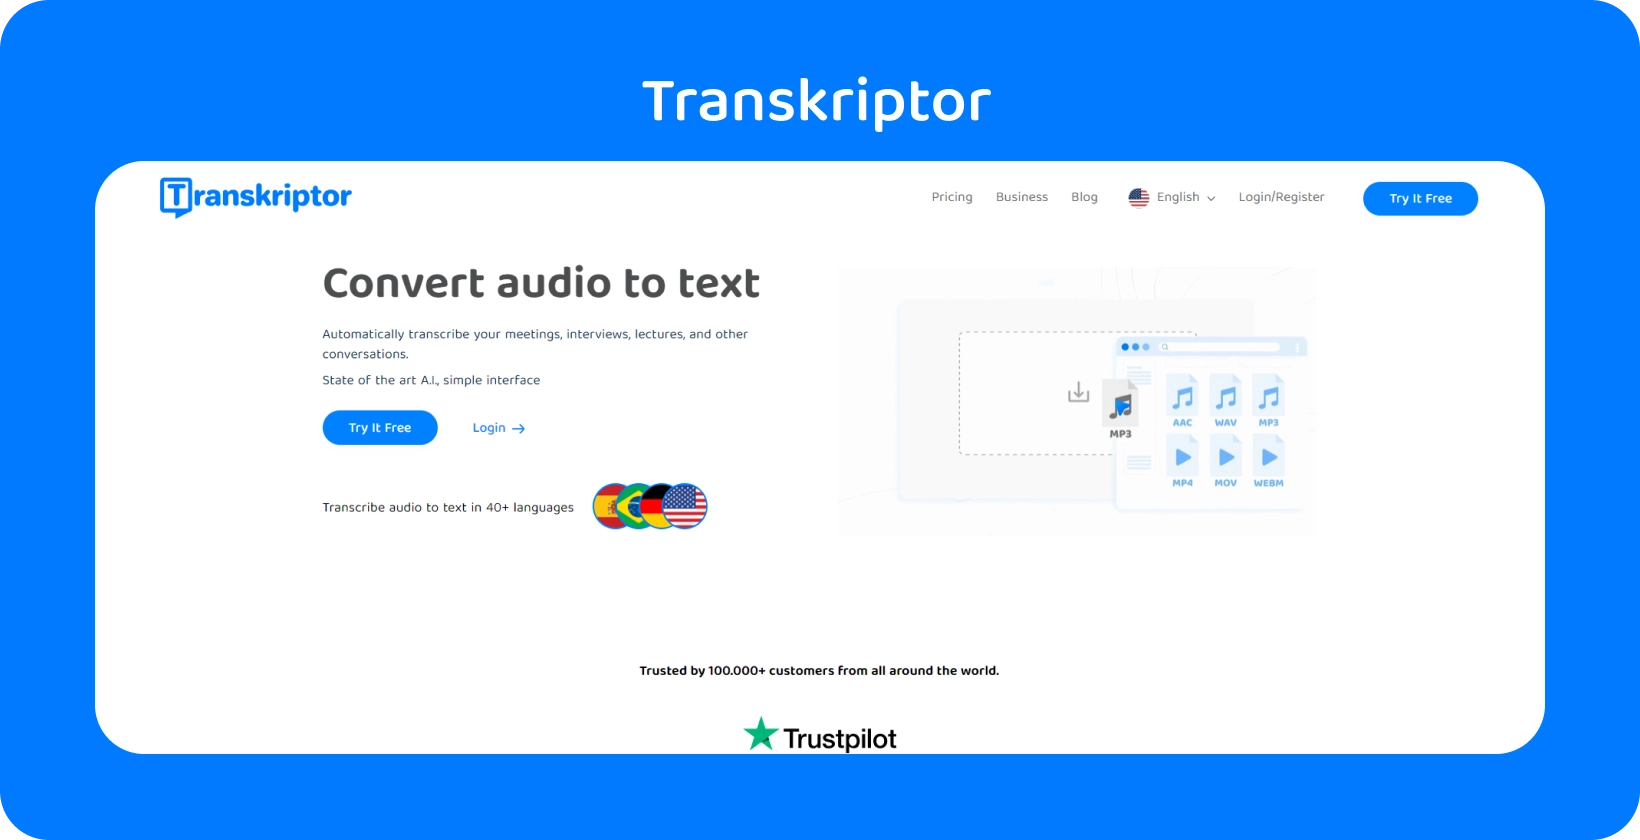 Скріншот інтерфейсу програмного забезпечення транскрипції «Transkriptor», що показує транскрипцію діалогу.